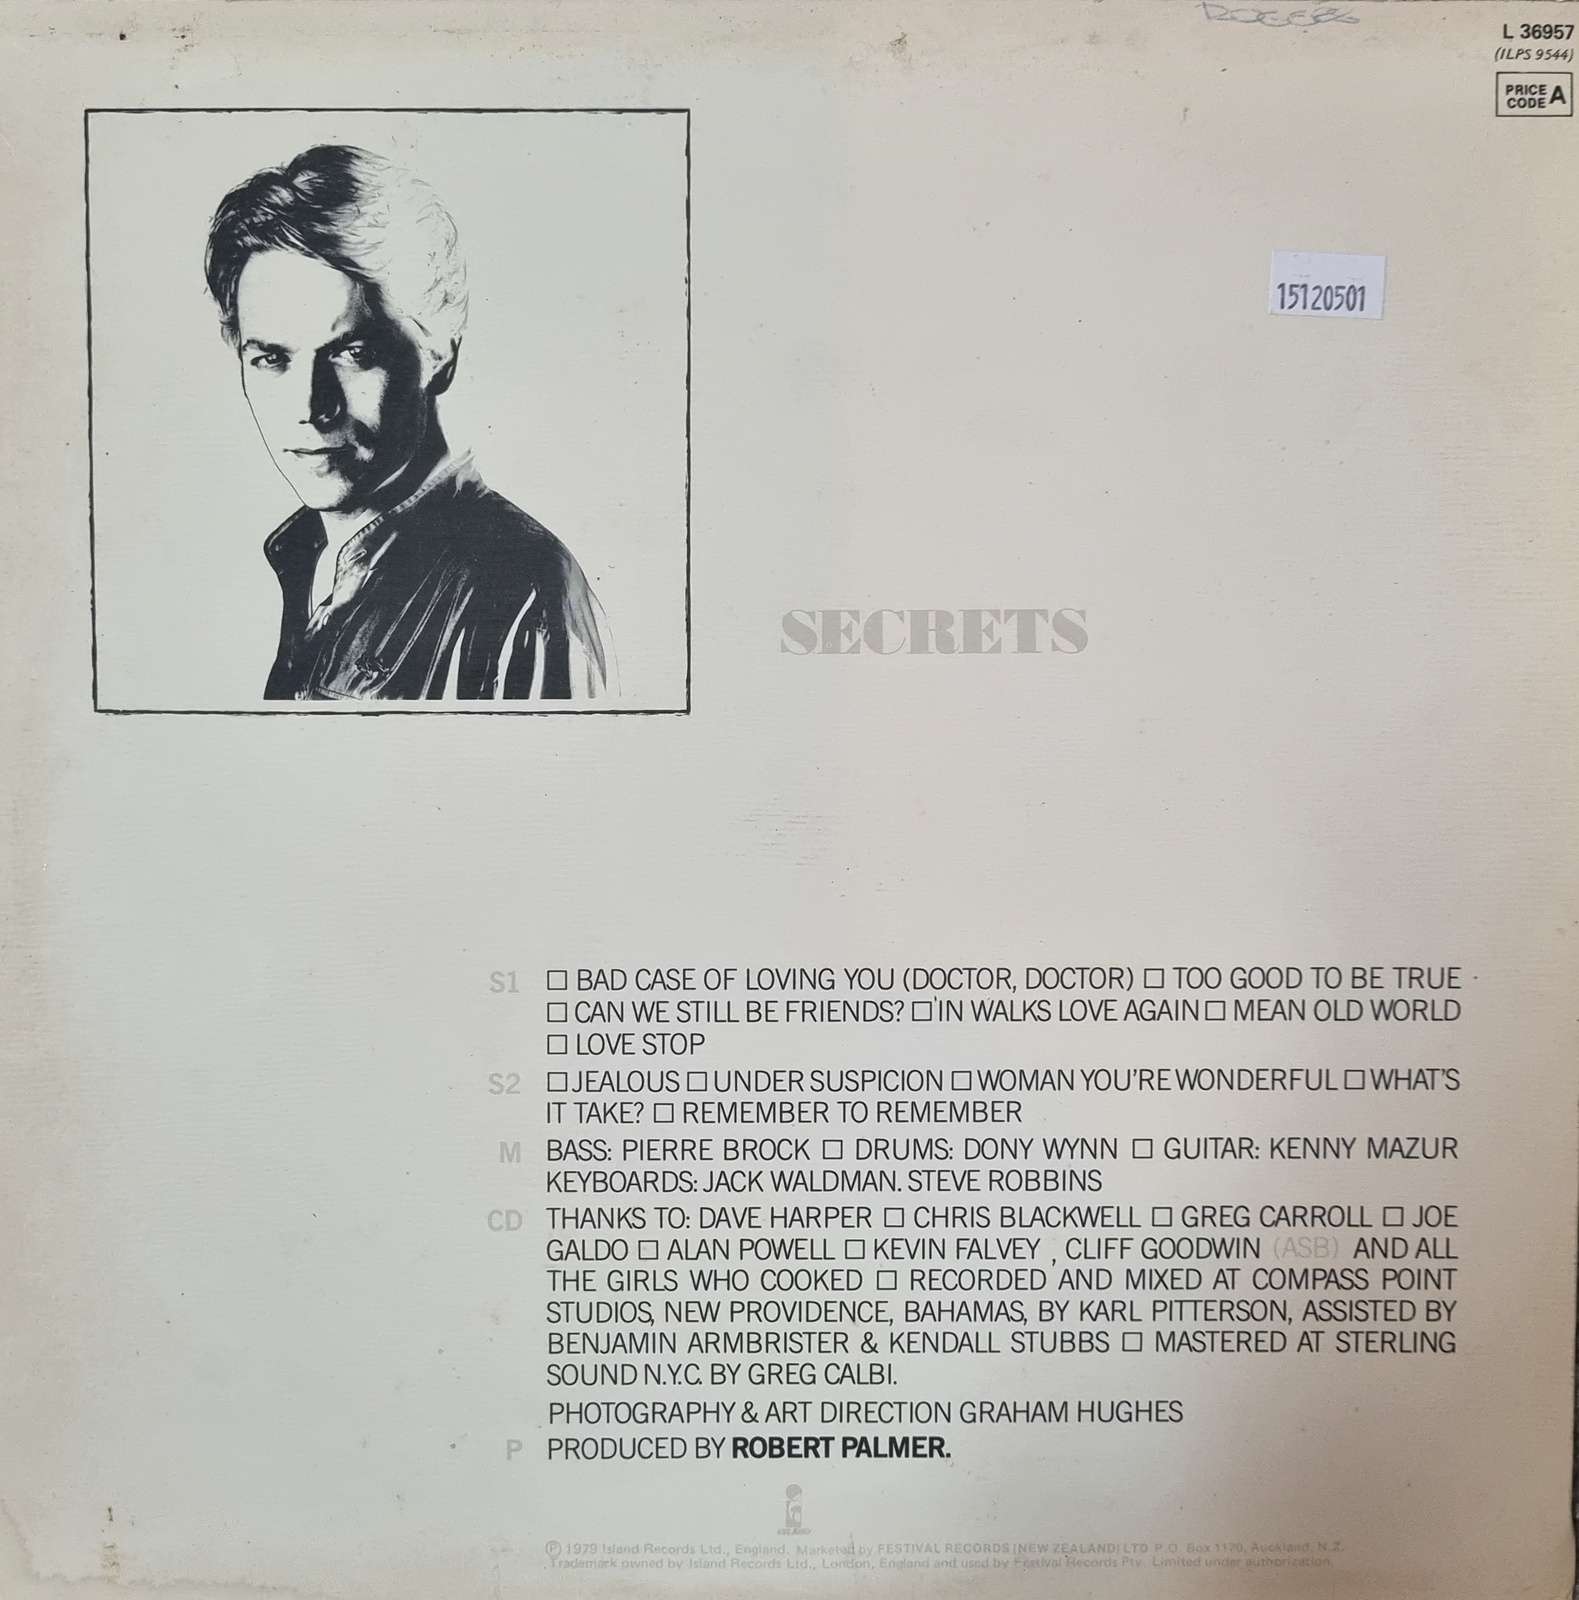 Robert Palmer - Secrets (LP)